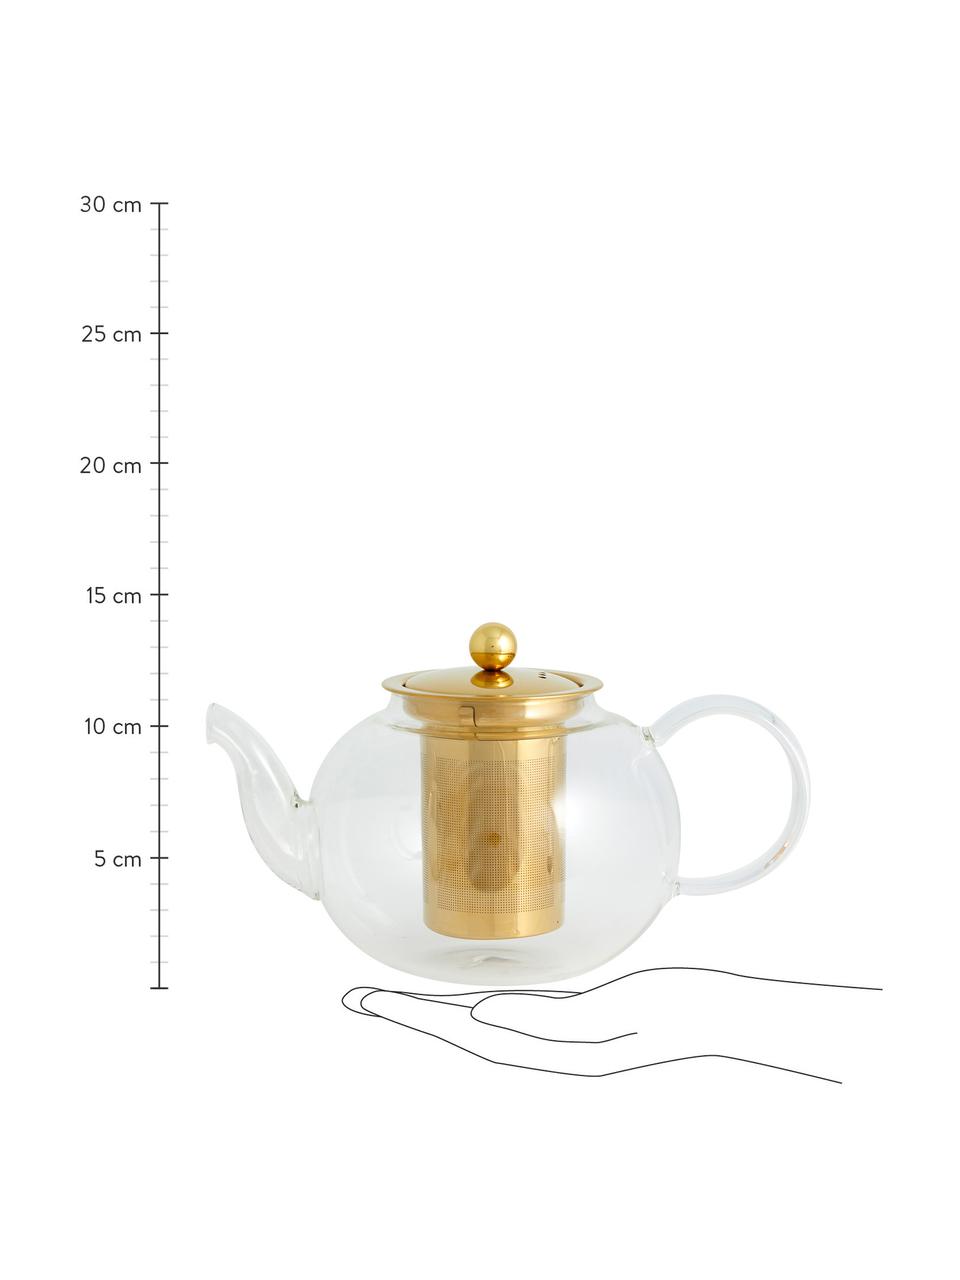 Théière en verre avec passoire à thé Chili, 1 l, Transparent, couleur dorée, 1 l